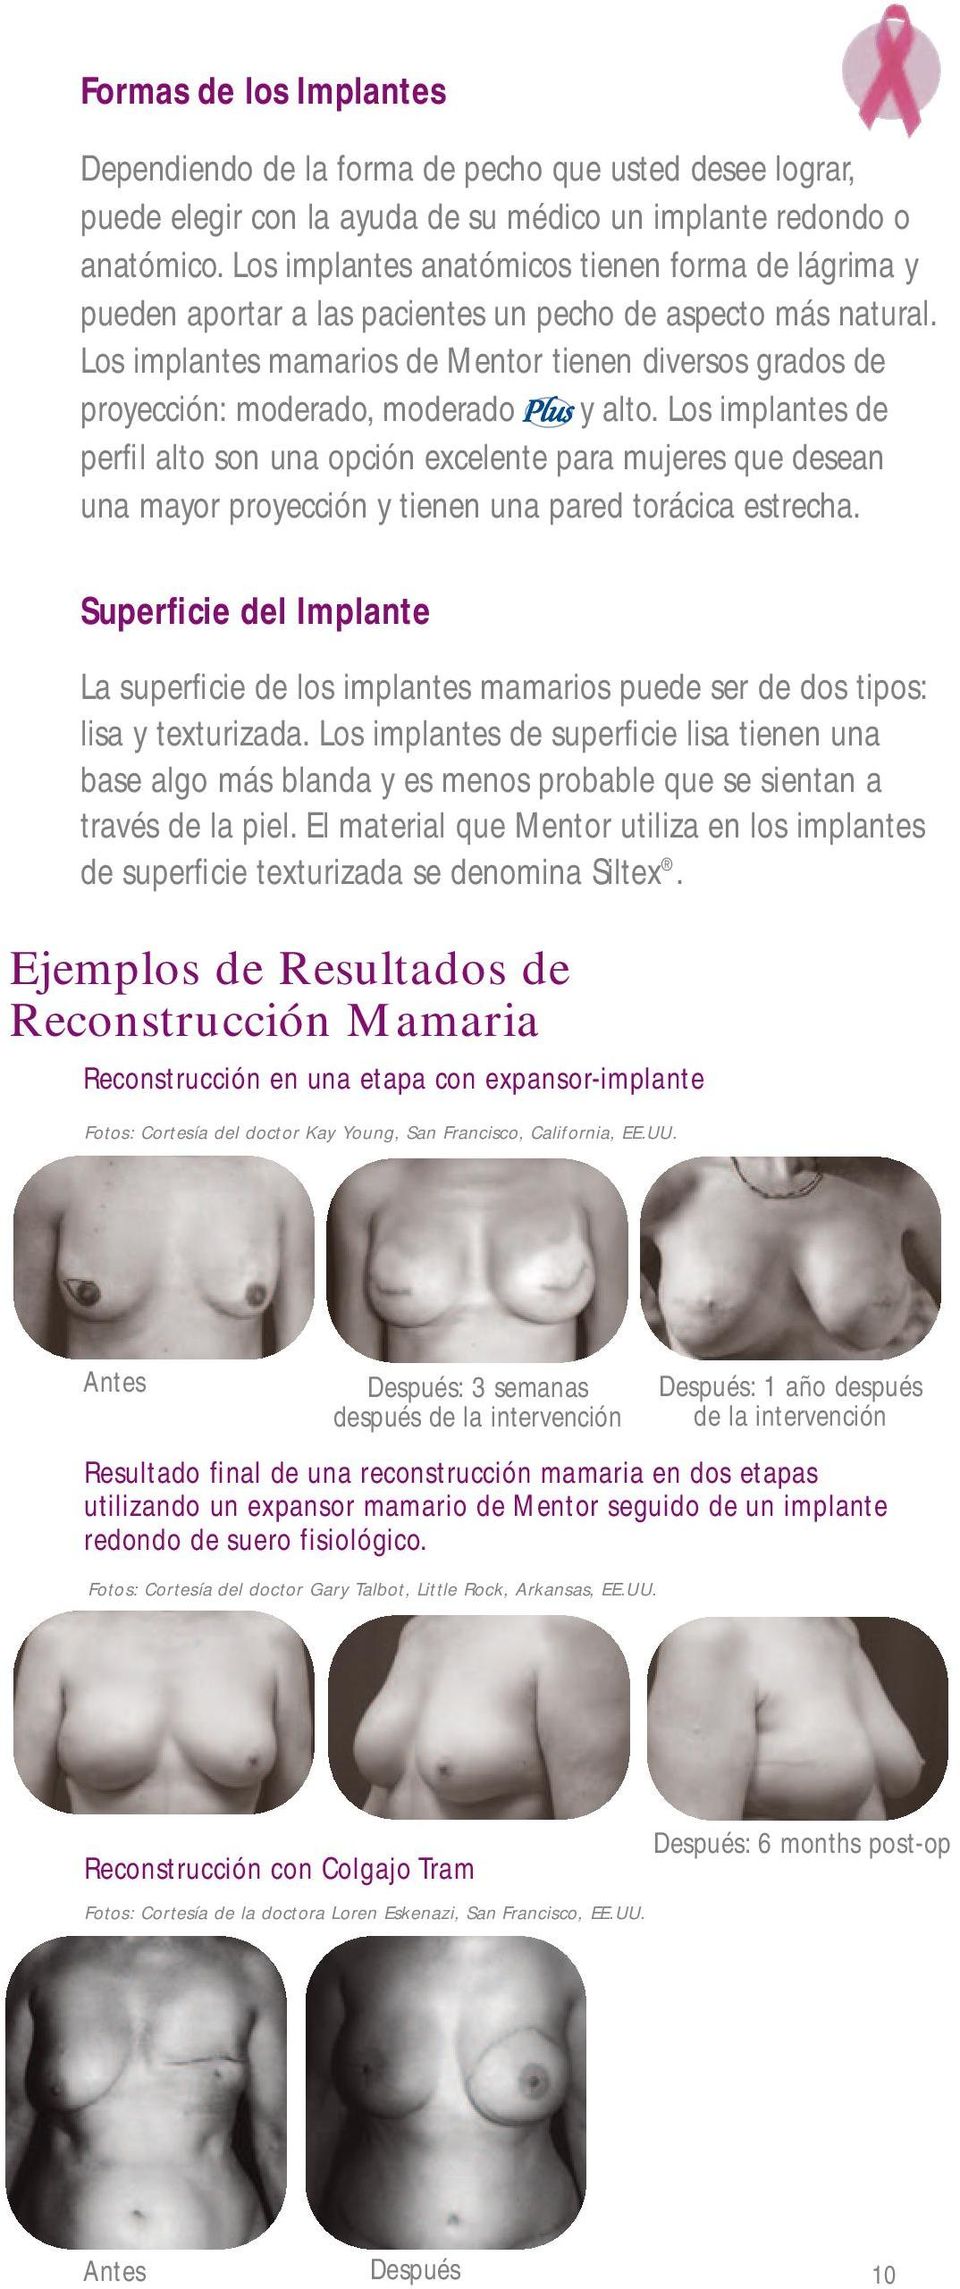 Los implantes mamarios de Mentor tienen diversos grados de proyección: moderado, moderado y alto.